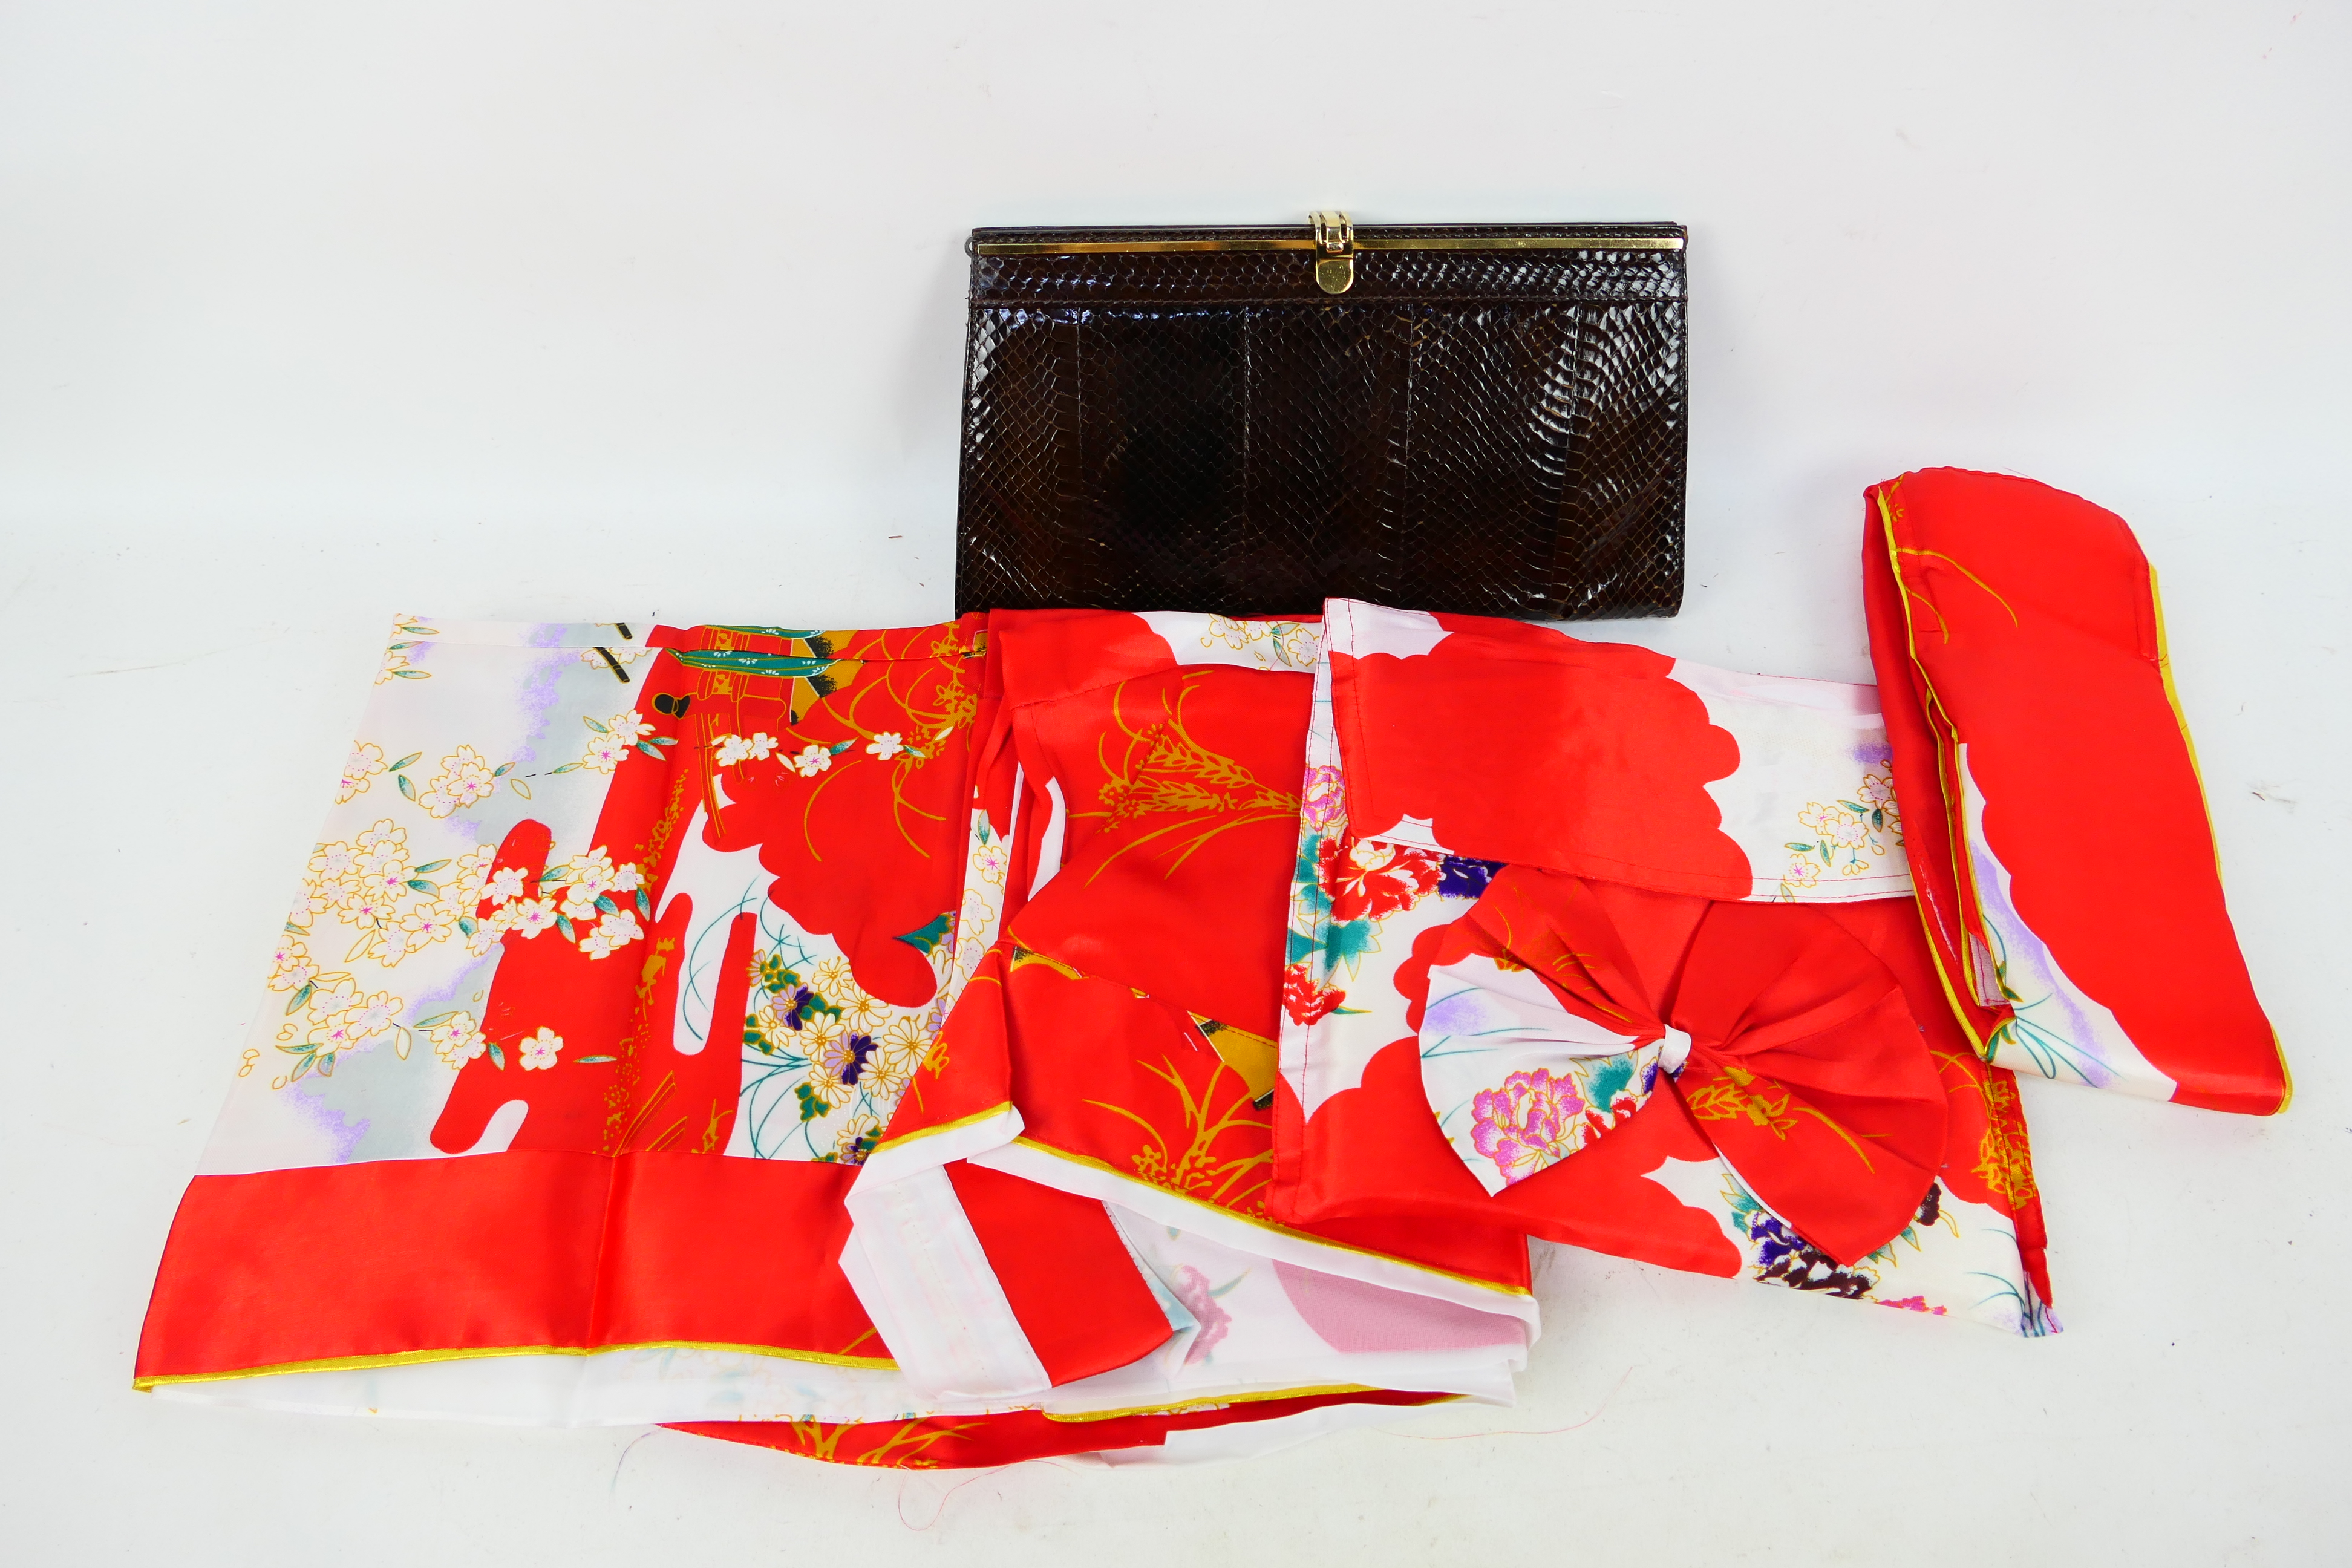 A vintage reptile skin hand bag and Japanese kimono.